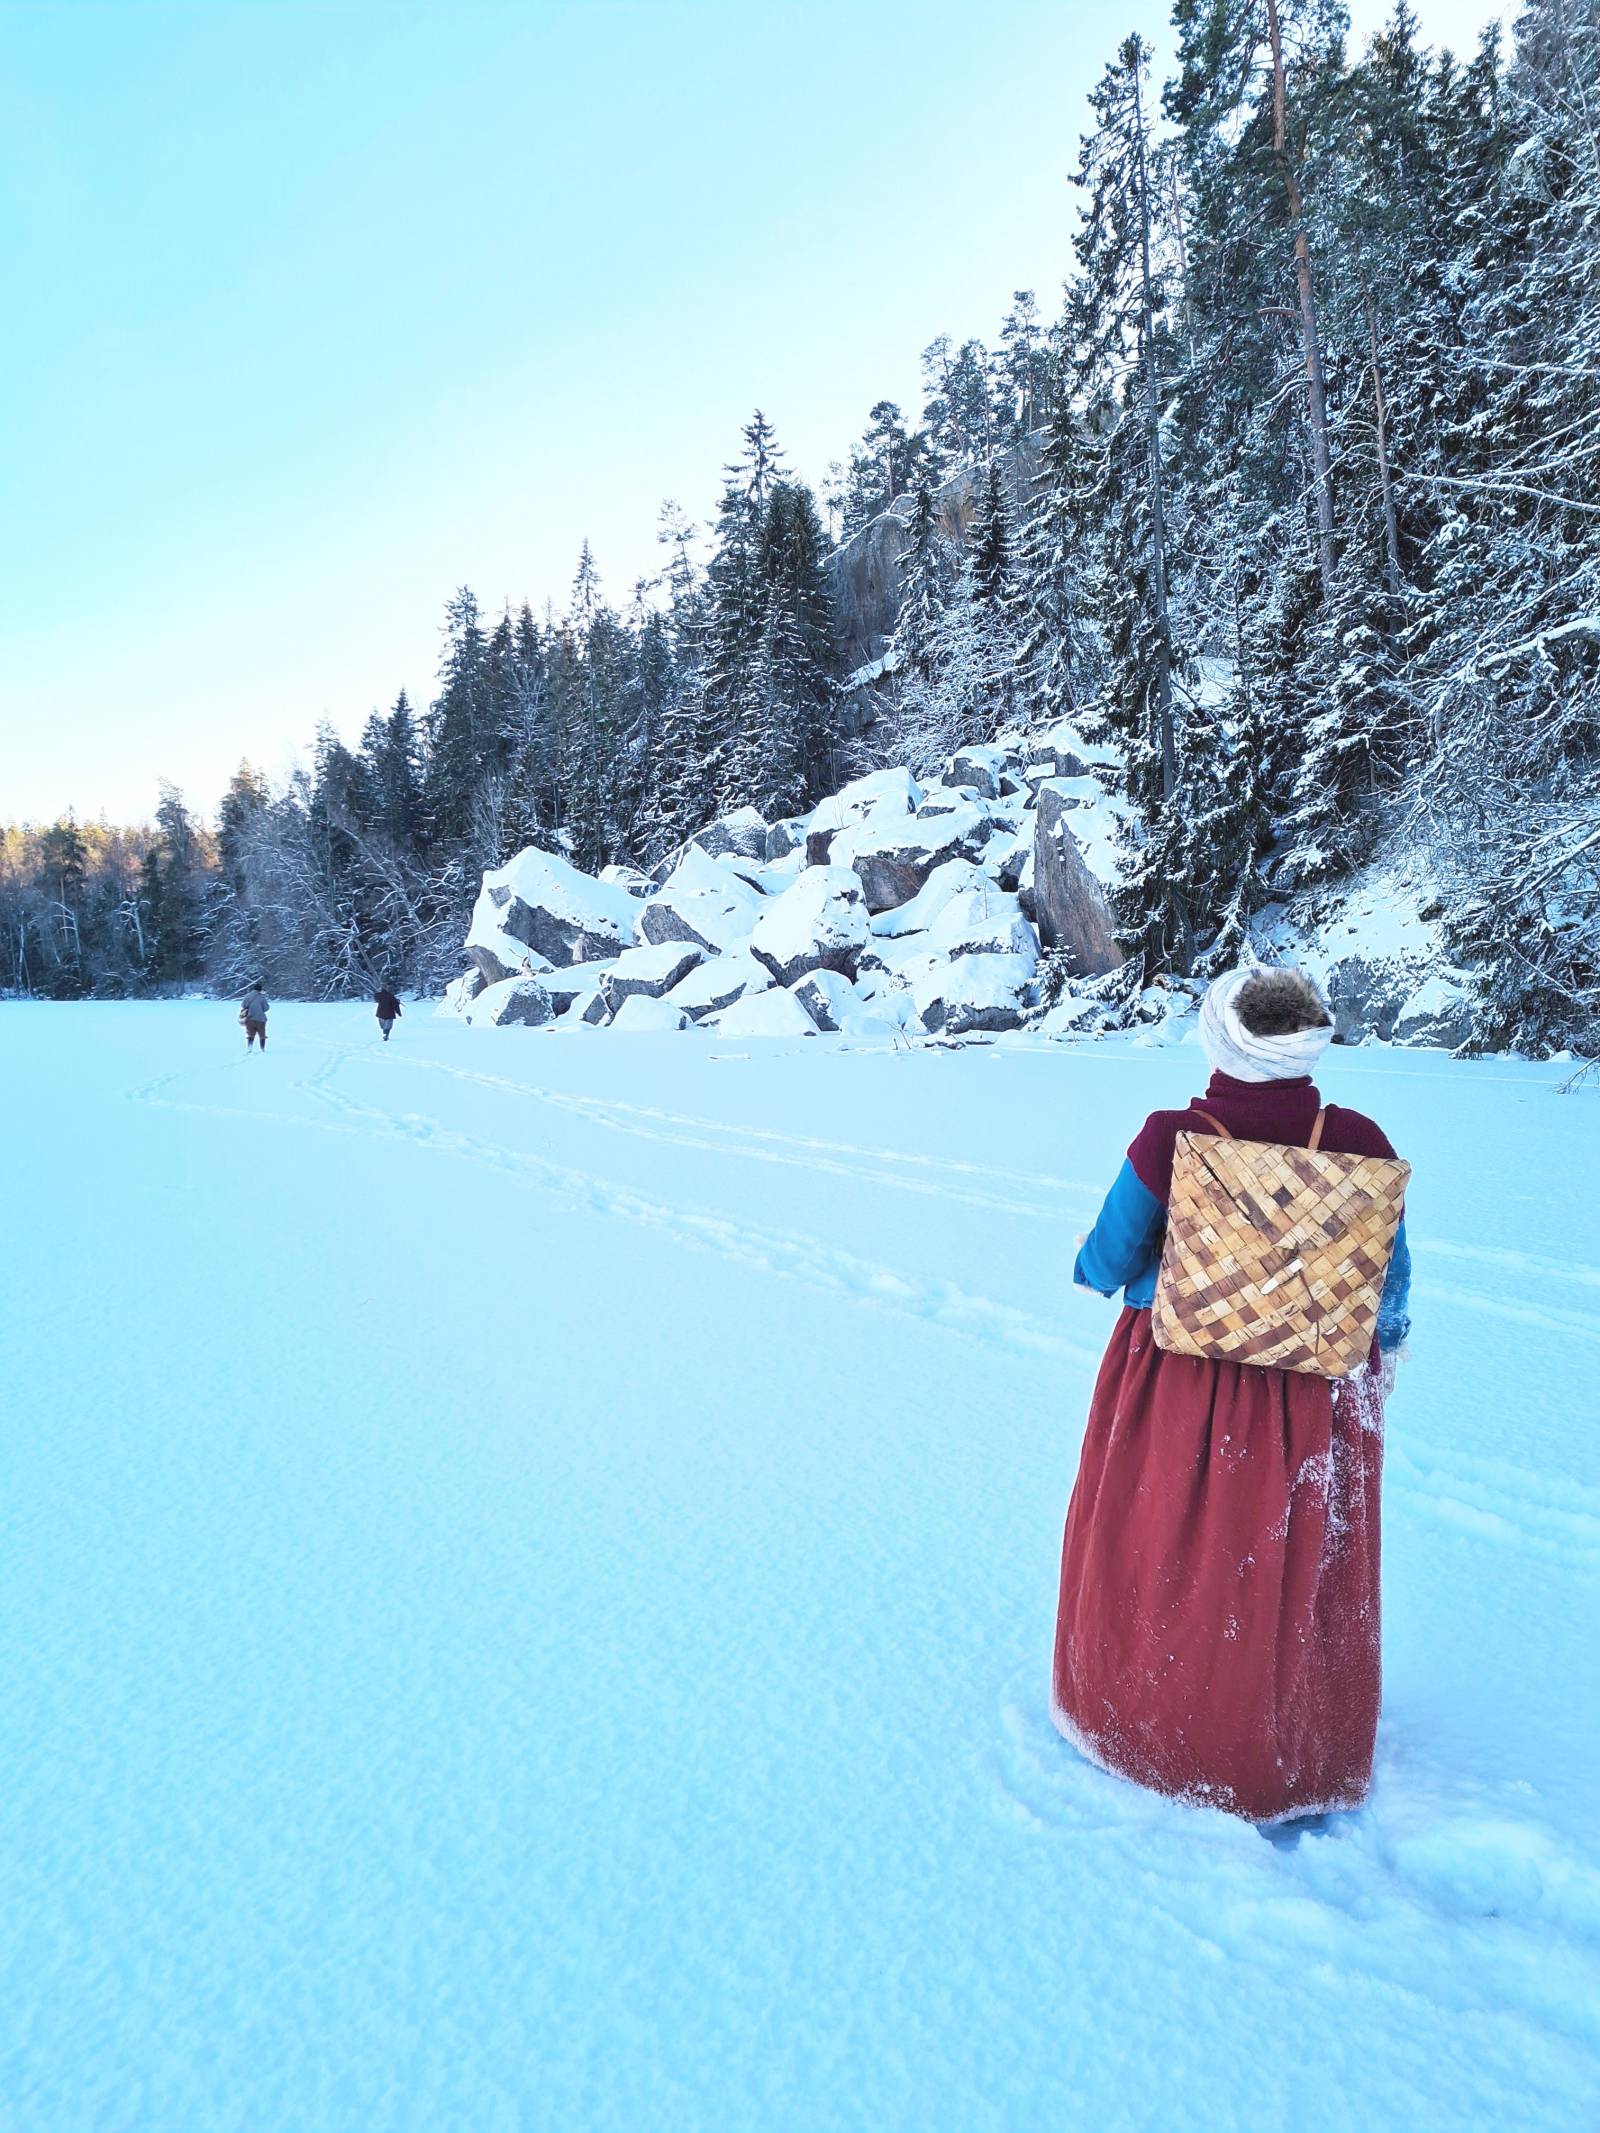 A 17th century female reenactor walking on frozen lake in Finnish winter scenery